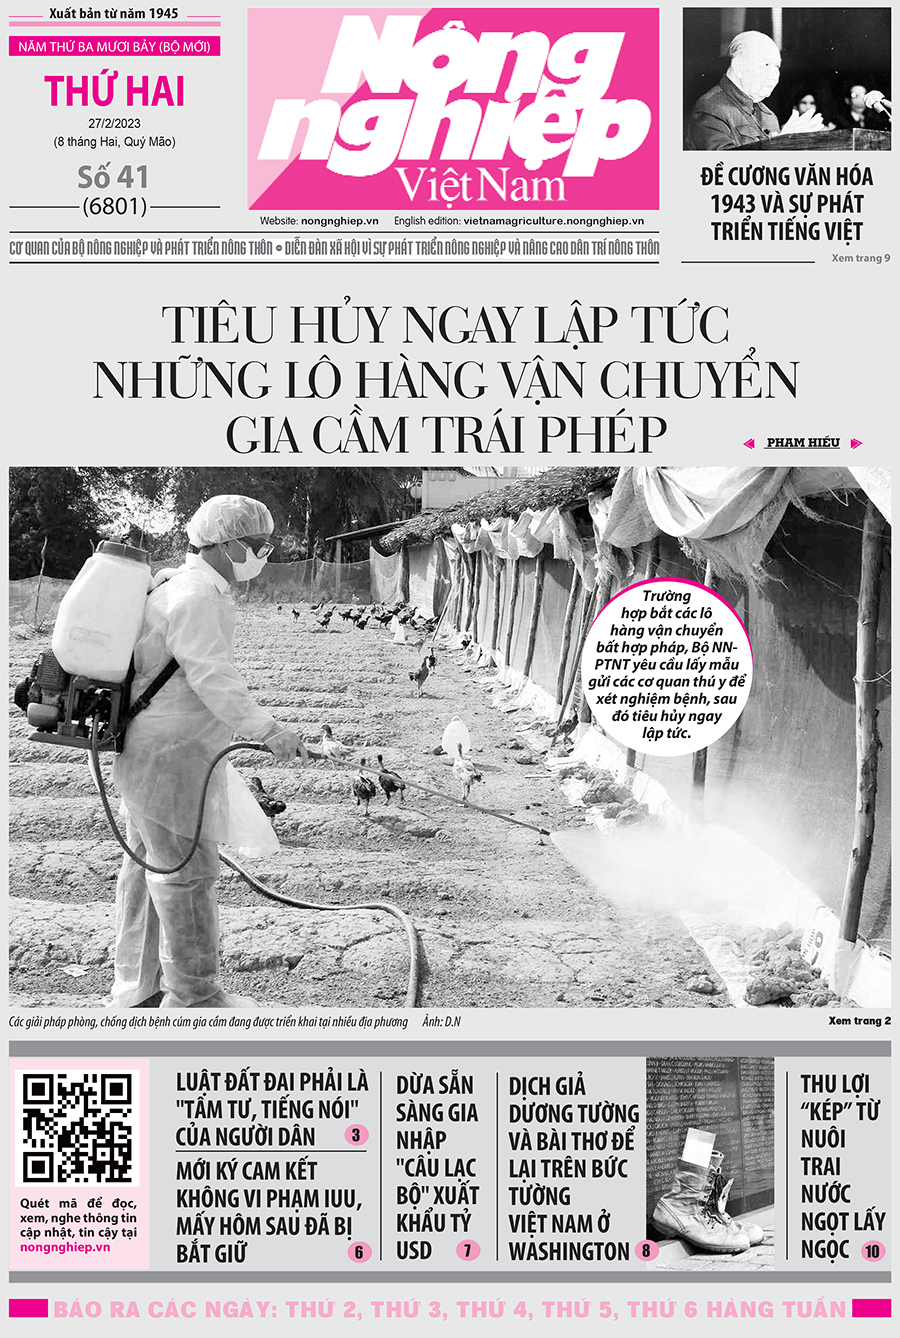 Tin nông nghiệp nổi bật trên số 41, báo Nông nghiệp Việt Nam ngày 27/2/2023